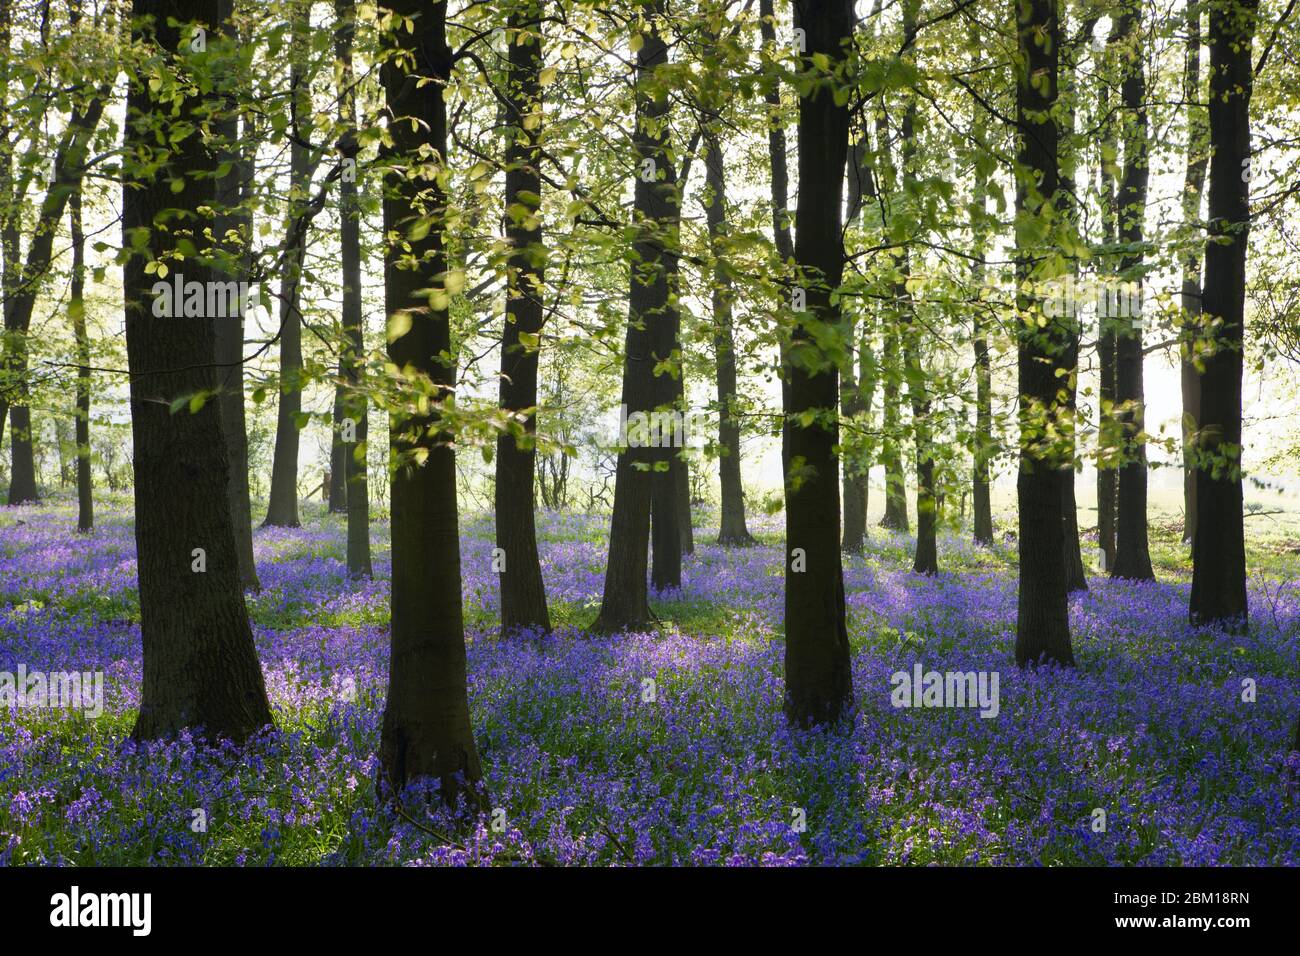 Les cloches en bois de Dockey couvrent le sol boisé avec un tapis bleu au printemps Banque D'Images